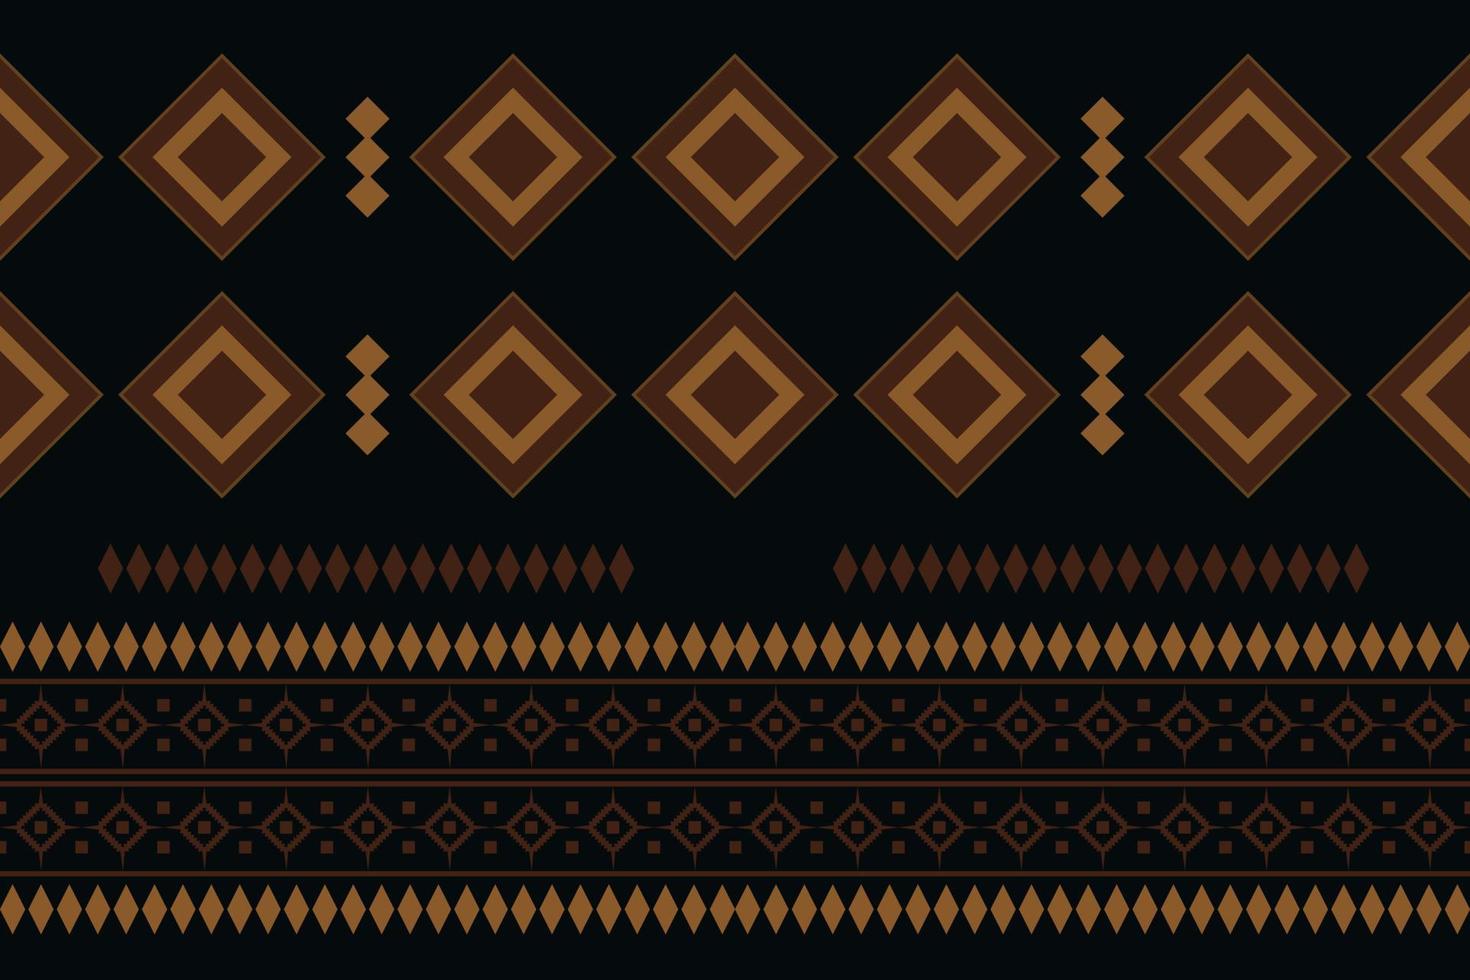 geometrischer stil des ethnischen stoffmusters. Sarong aztekisches ethnisches orientalisches Muster traditioneller dunkler schwarzer Hintergrund. abstrakt, vektor, illustration. Verwendung für Textur, Kleidung, Verpackung, Dekoration, Teppich. vektor